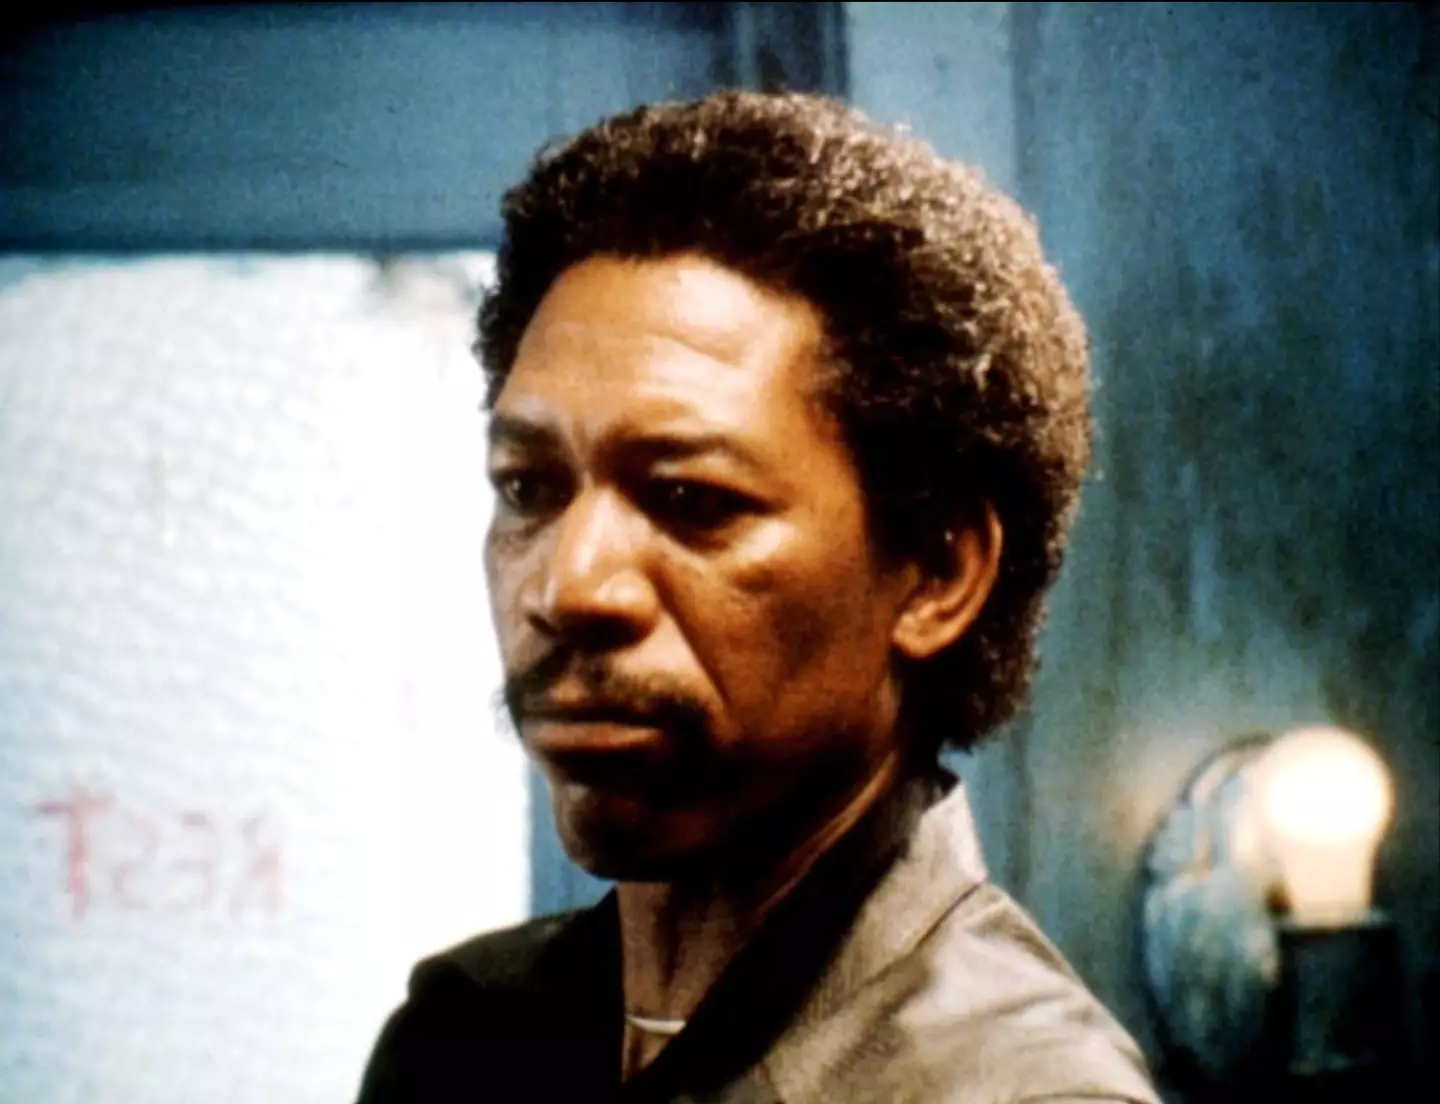 Freeman in Street Smart (1987).